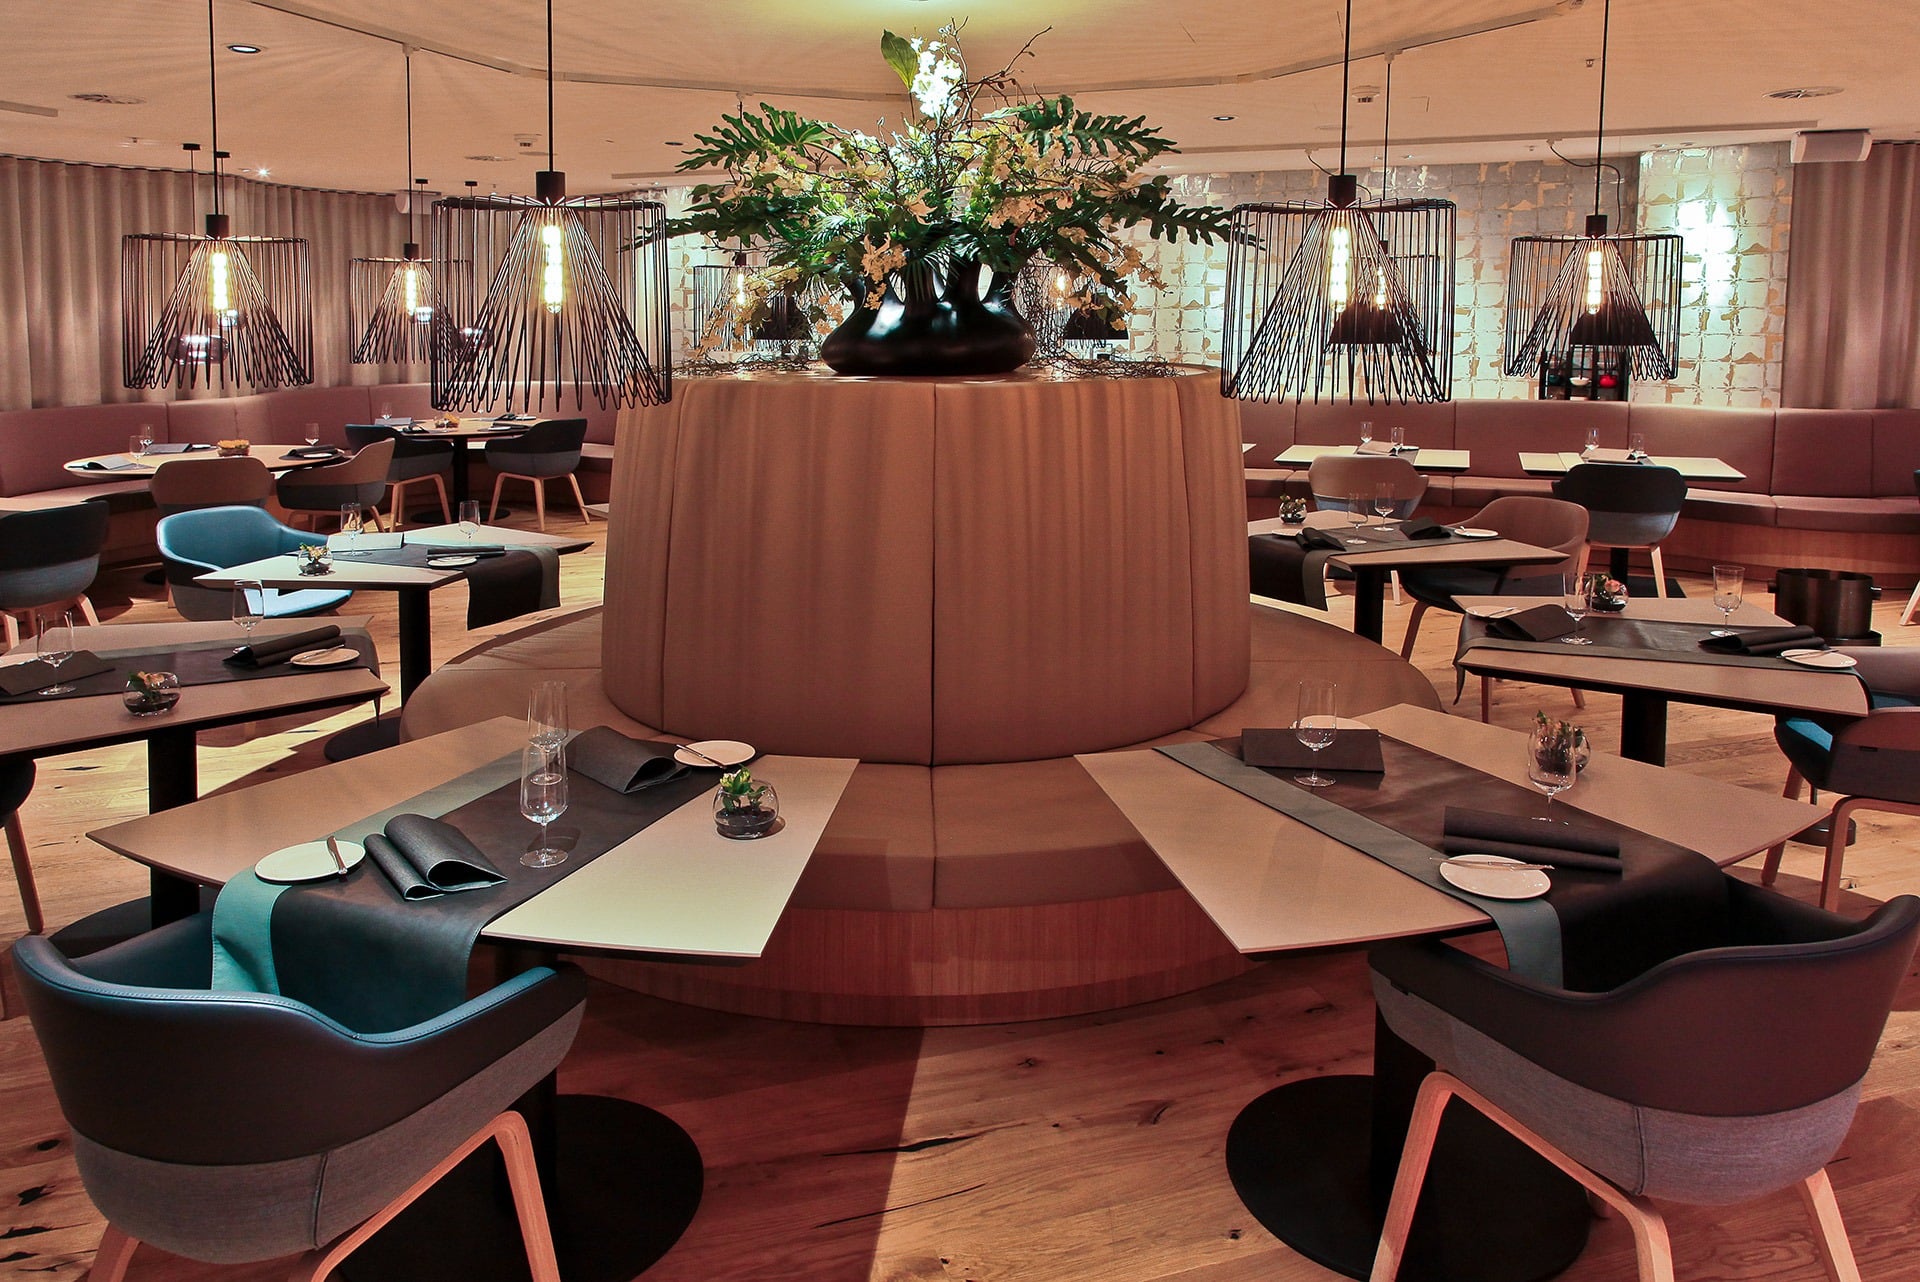 Restaurantinnenraum mit runder Sitzbank und Tischen